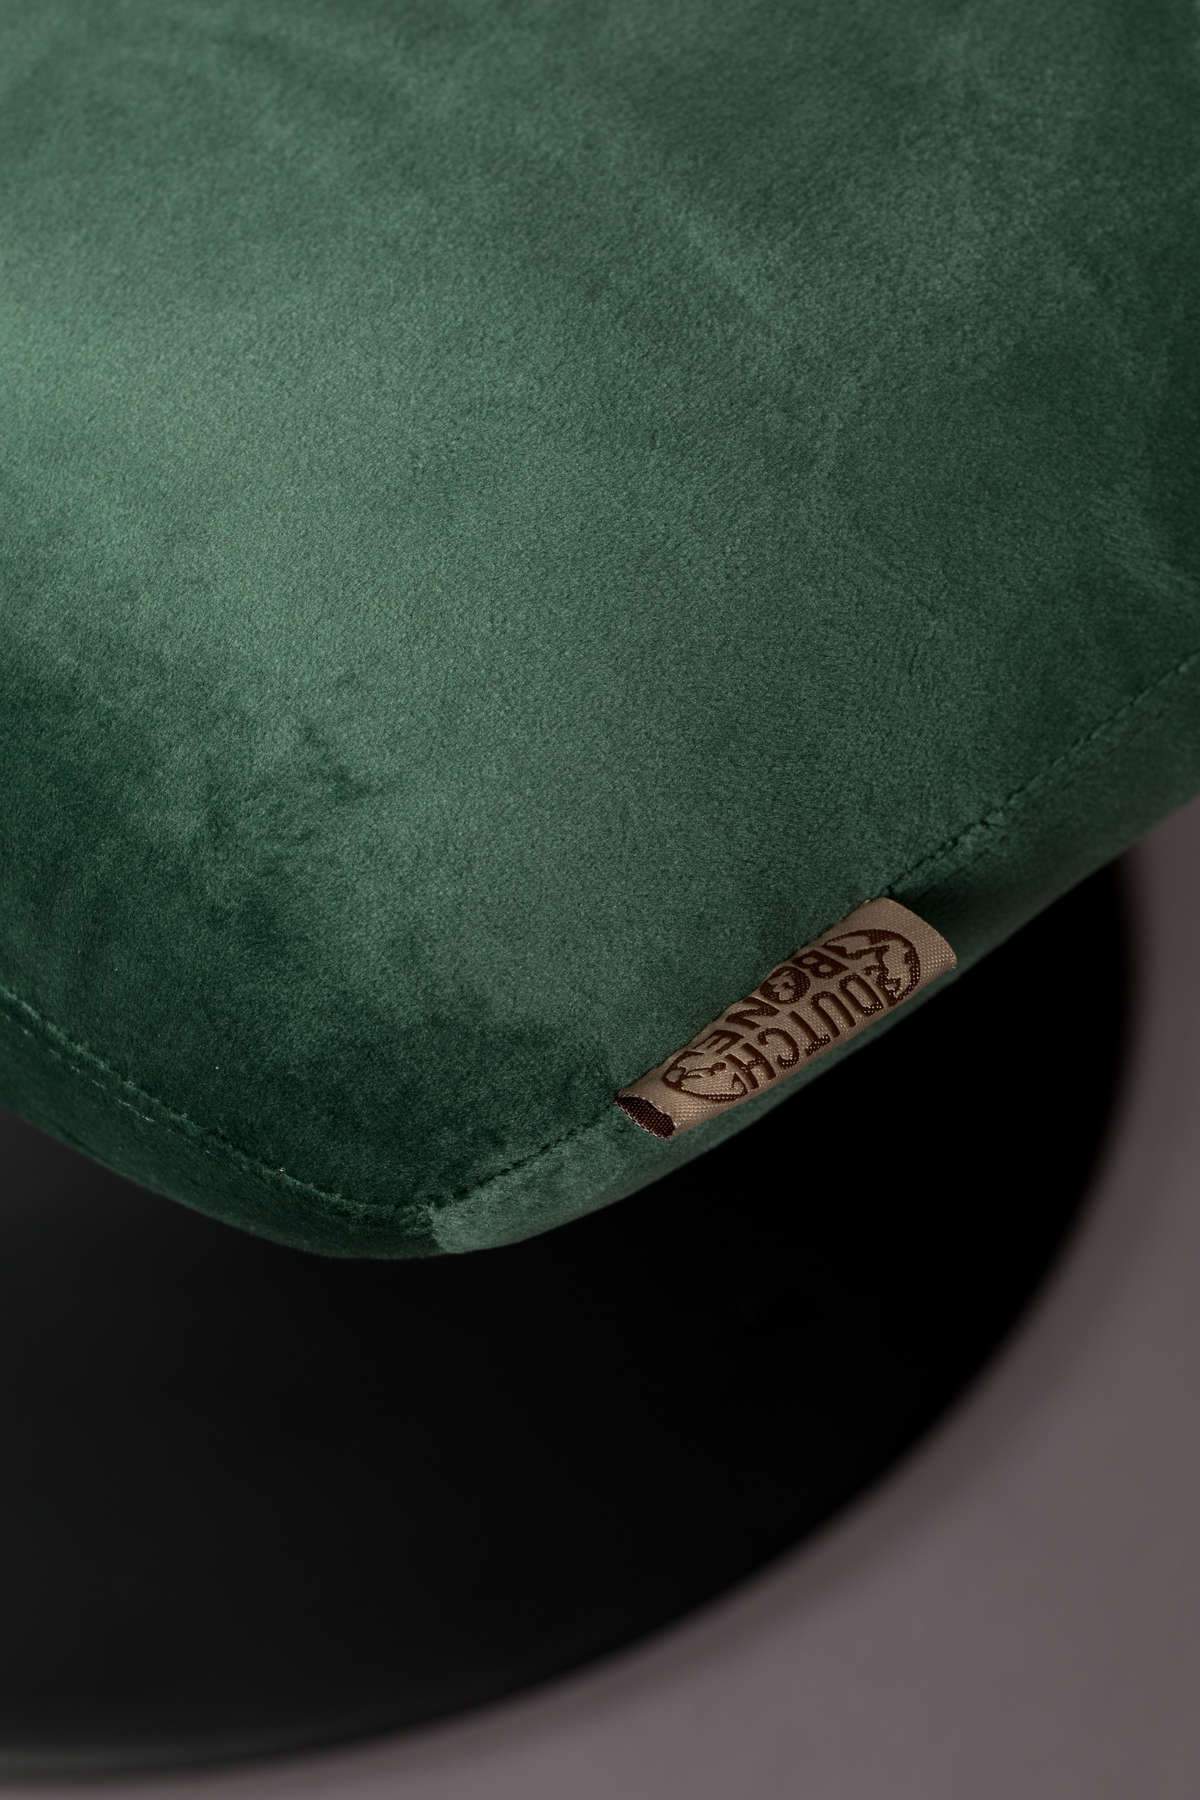 BAR VELVET stool green, Dutchbone, Eye on Design